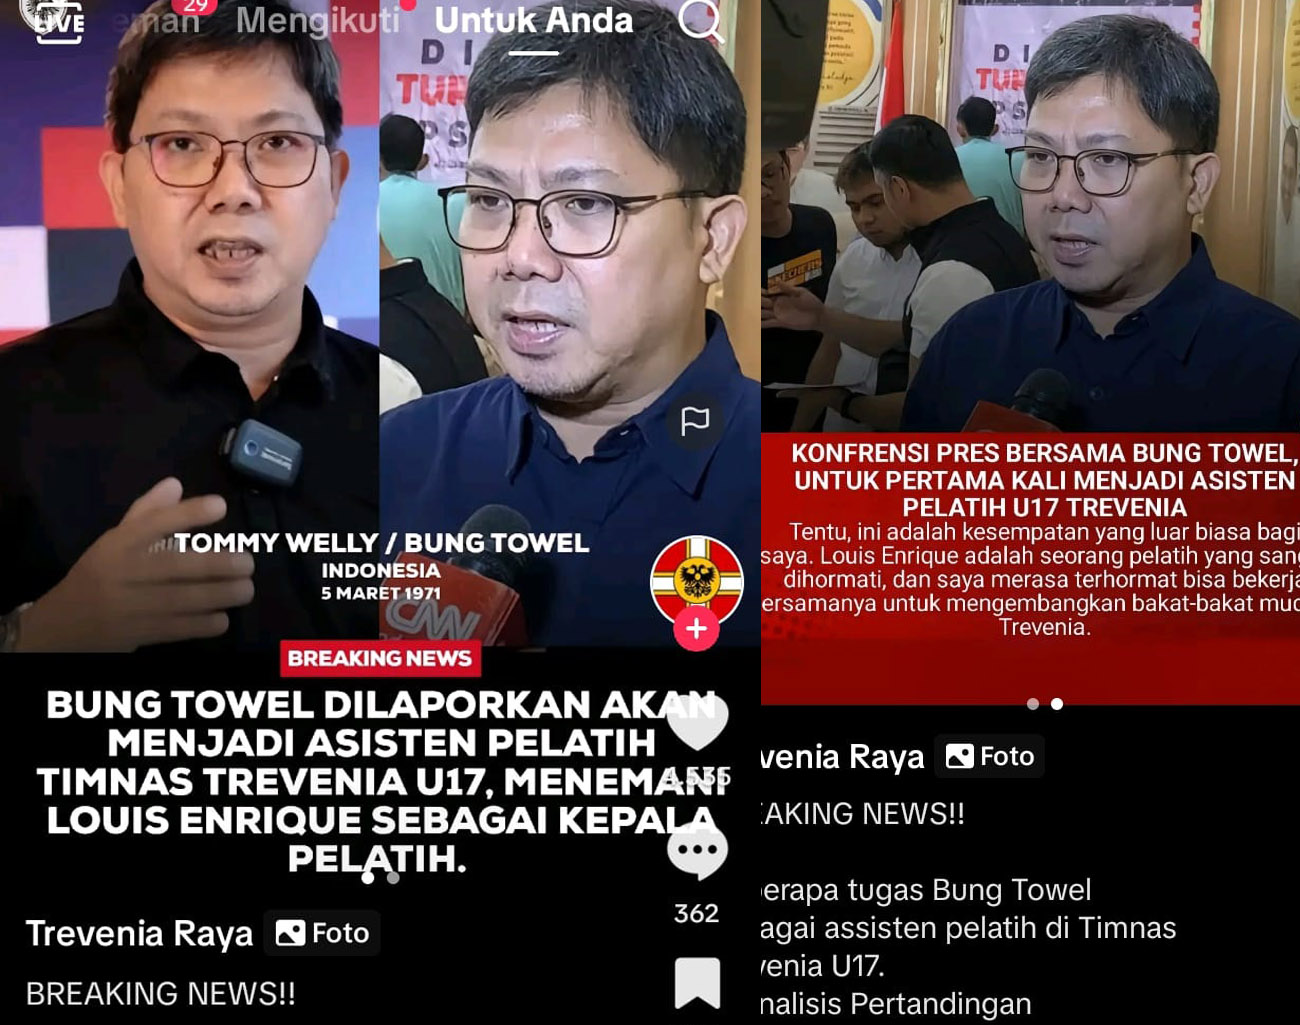 Bung Towel, Pengkritik Sepak Bola Indonesia ini Dapat Job dari Ketua PSSI Erick Thohir, Inilah Pekerjaannya